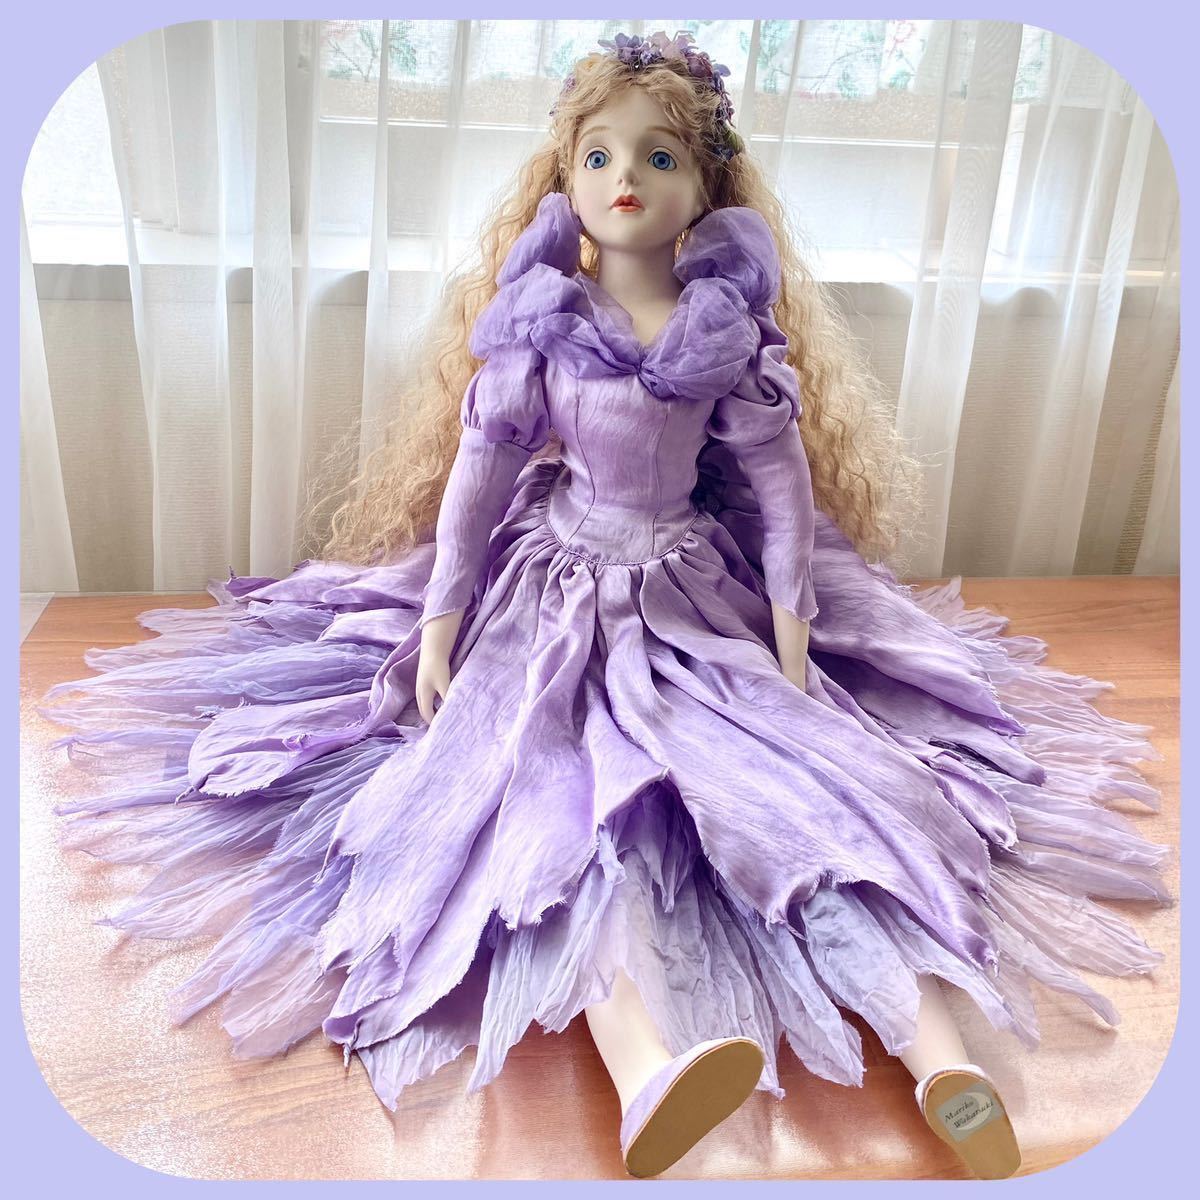 ベストセラー 菫色のドレスのお人形 創作人形 ビスクドール 70cm 若月